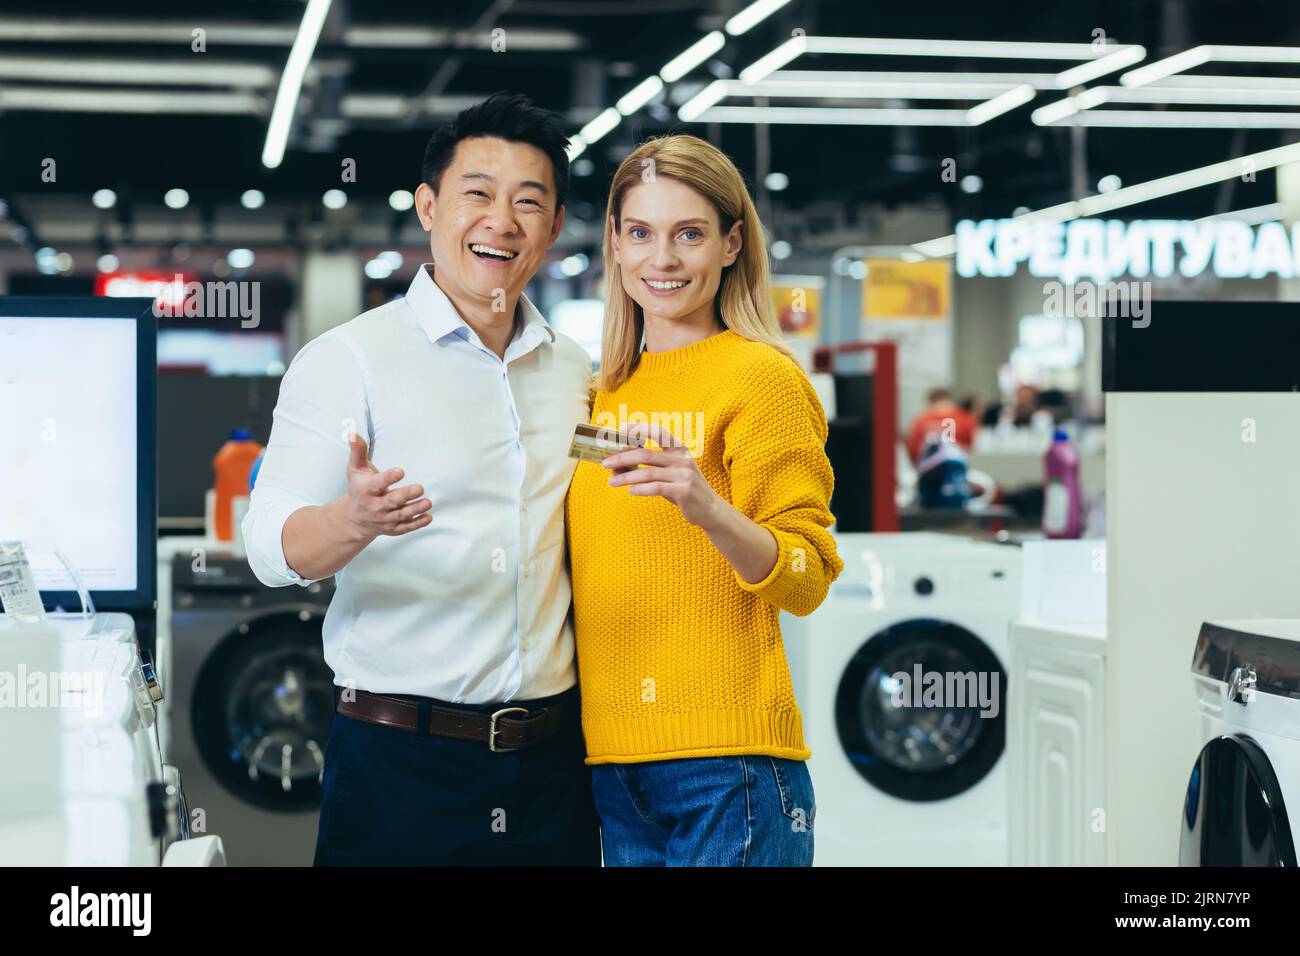 Porträt eines vielfältigen Familienpaares Asiatische Männer und Frauen, die in Supermärkten, Elektronik und Haushaltsgeräten einkaufen, die Kamera betrachten und lächeln, zufrieden mit Bankkreditkarte Stockfoto